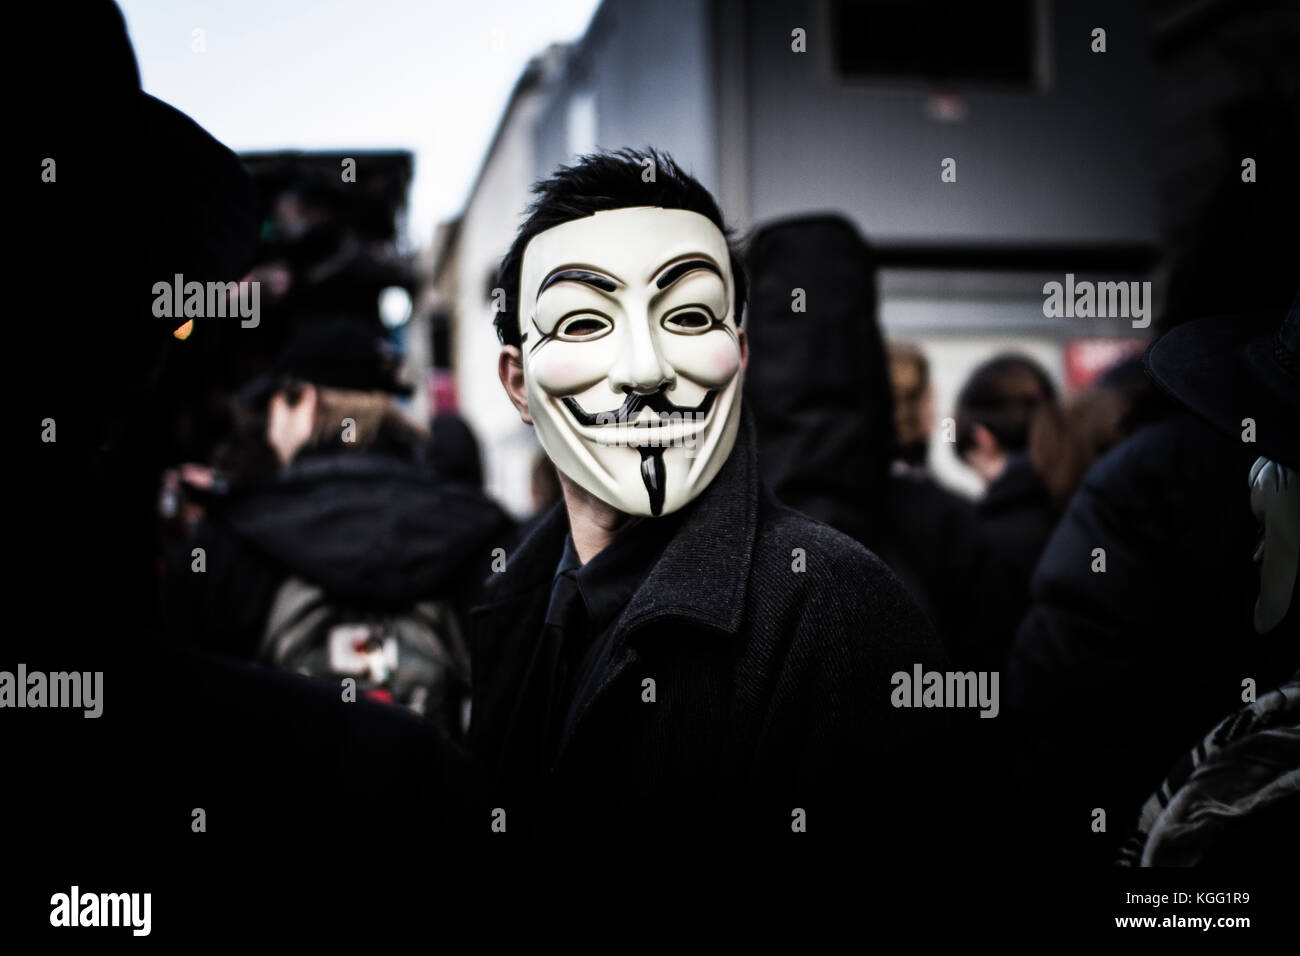 Persona lleva una máscara de Guy Fawkes, que hoy es una marca y un símbolo  para el grupo hacktivist online anónima. 2012 Fotografía de stock - Alamy